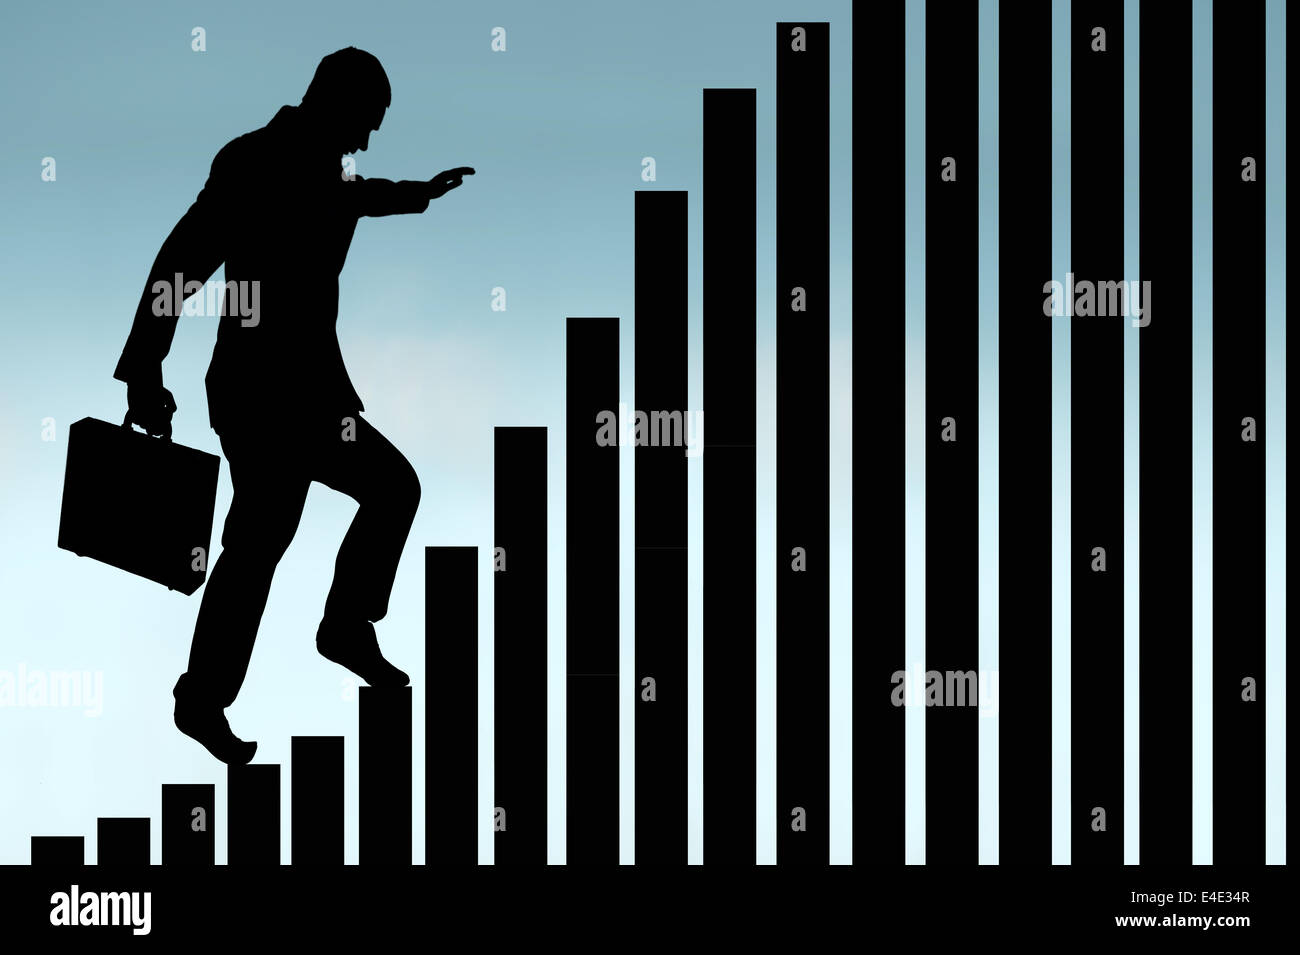 Empresario en silueta subir un gráfico de barras en el concepto de crecimiento empresarial Foto de stock